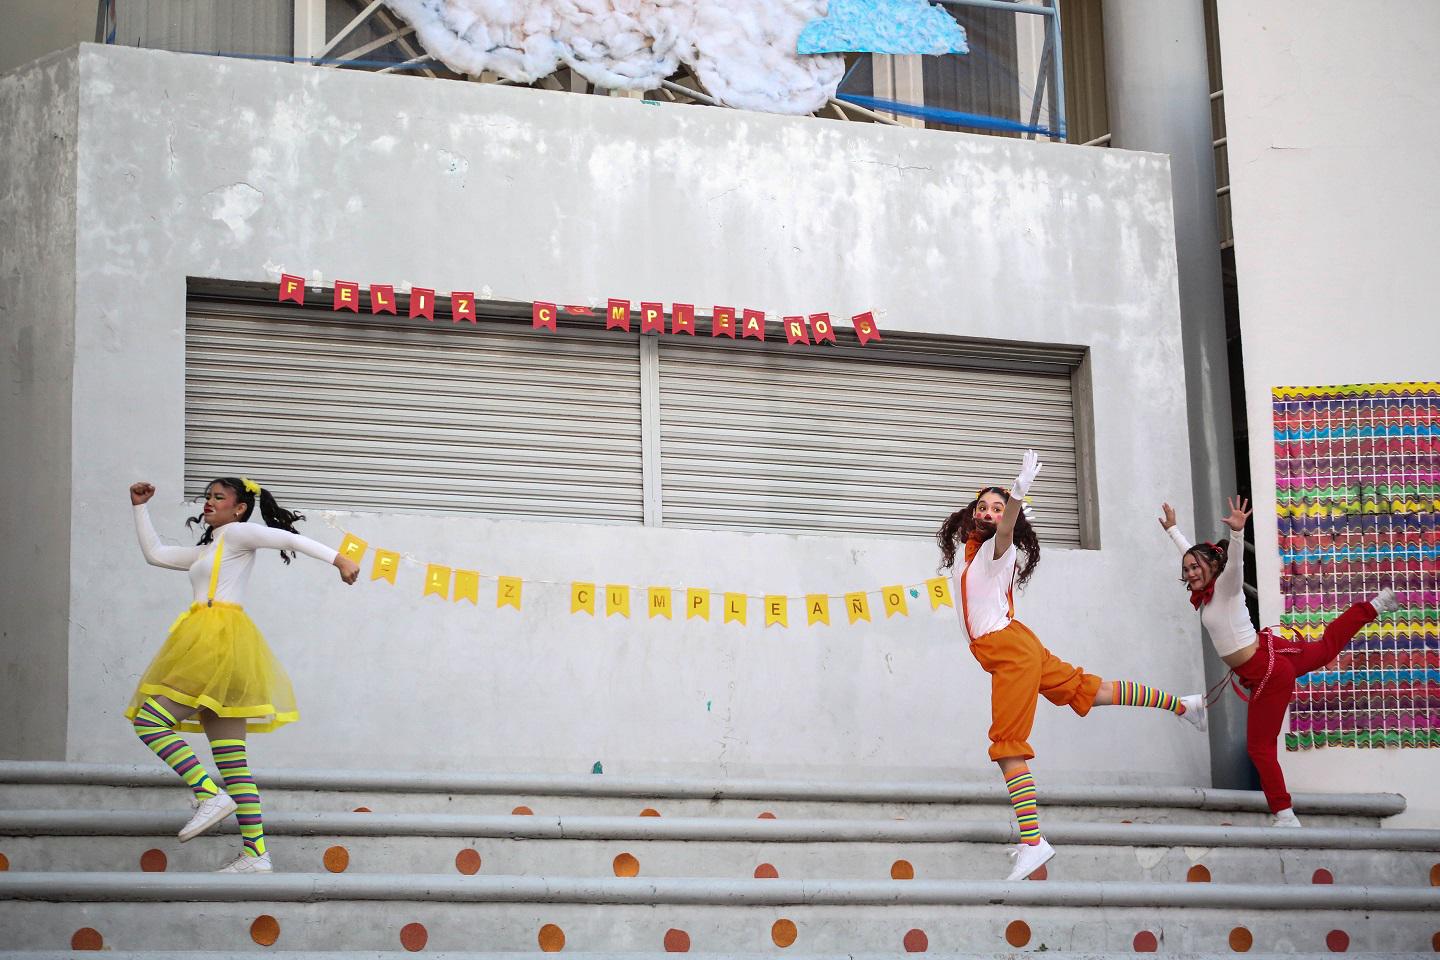 $!Con danza, juego y diversión celebran el Día del Niño